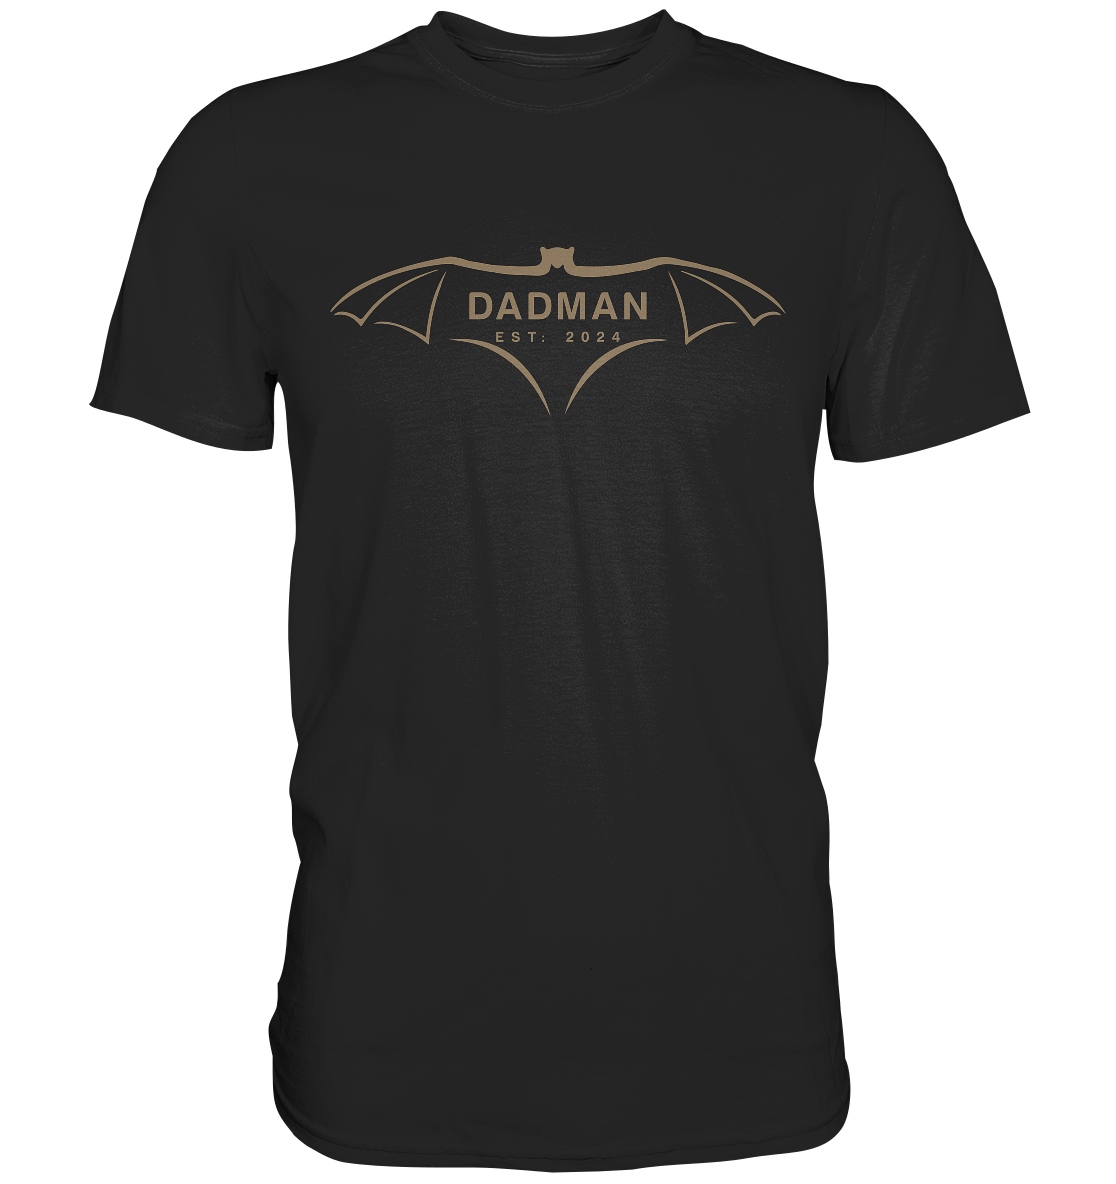 DADMAN 2024 Premium Edition, Datum personalisierbar - Premium Shirt